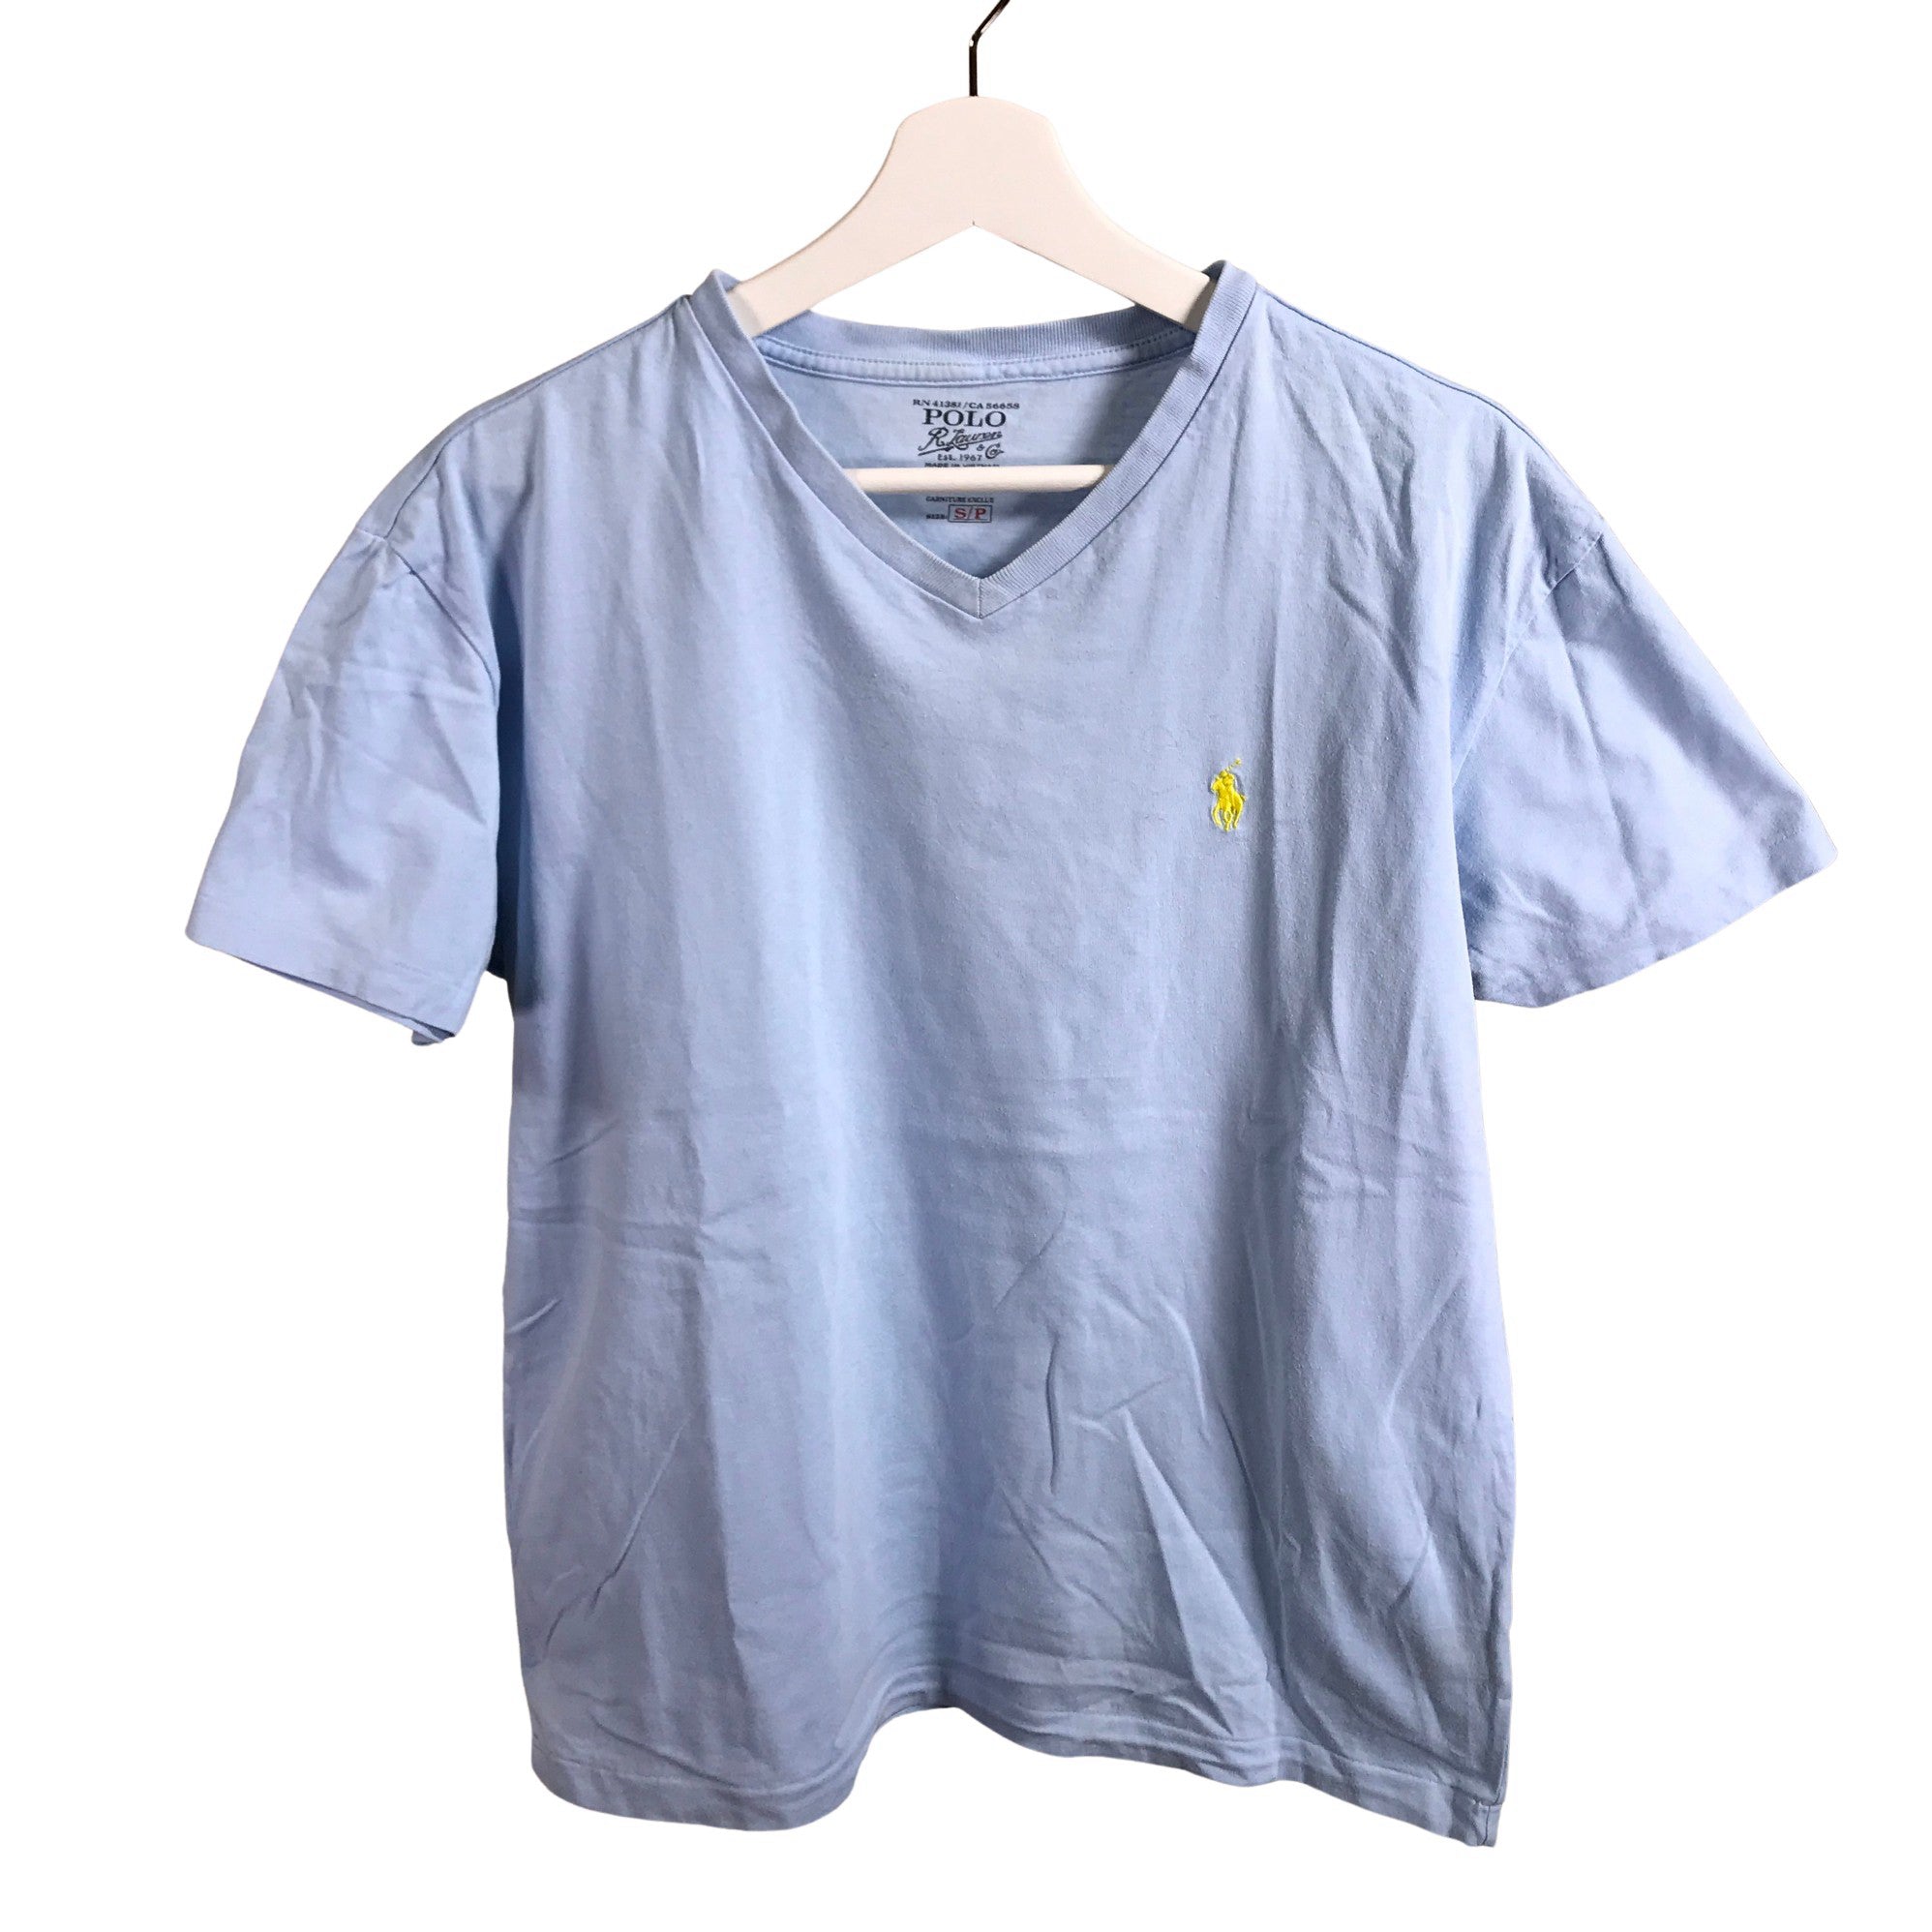 Men's Ralph Lauren T-shirt, size S (Light blue) | Emmy